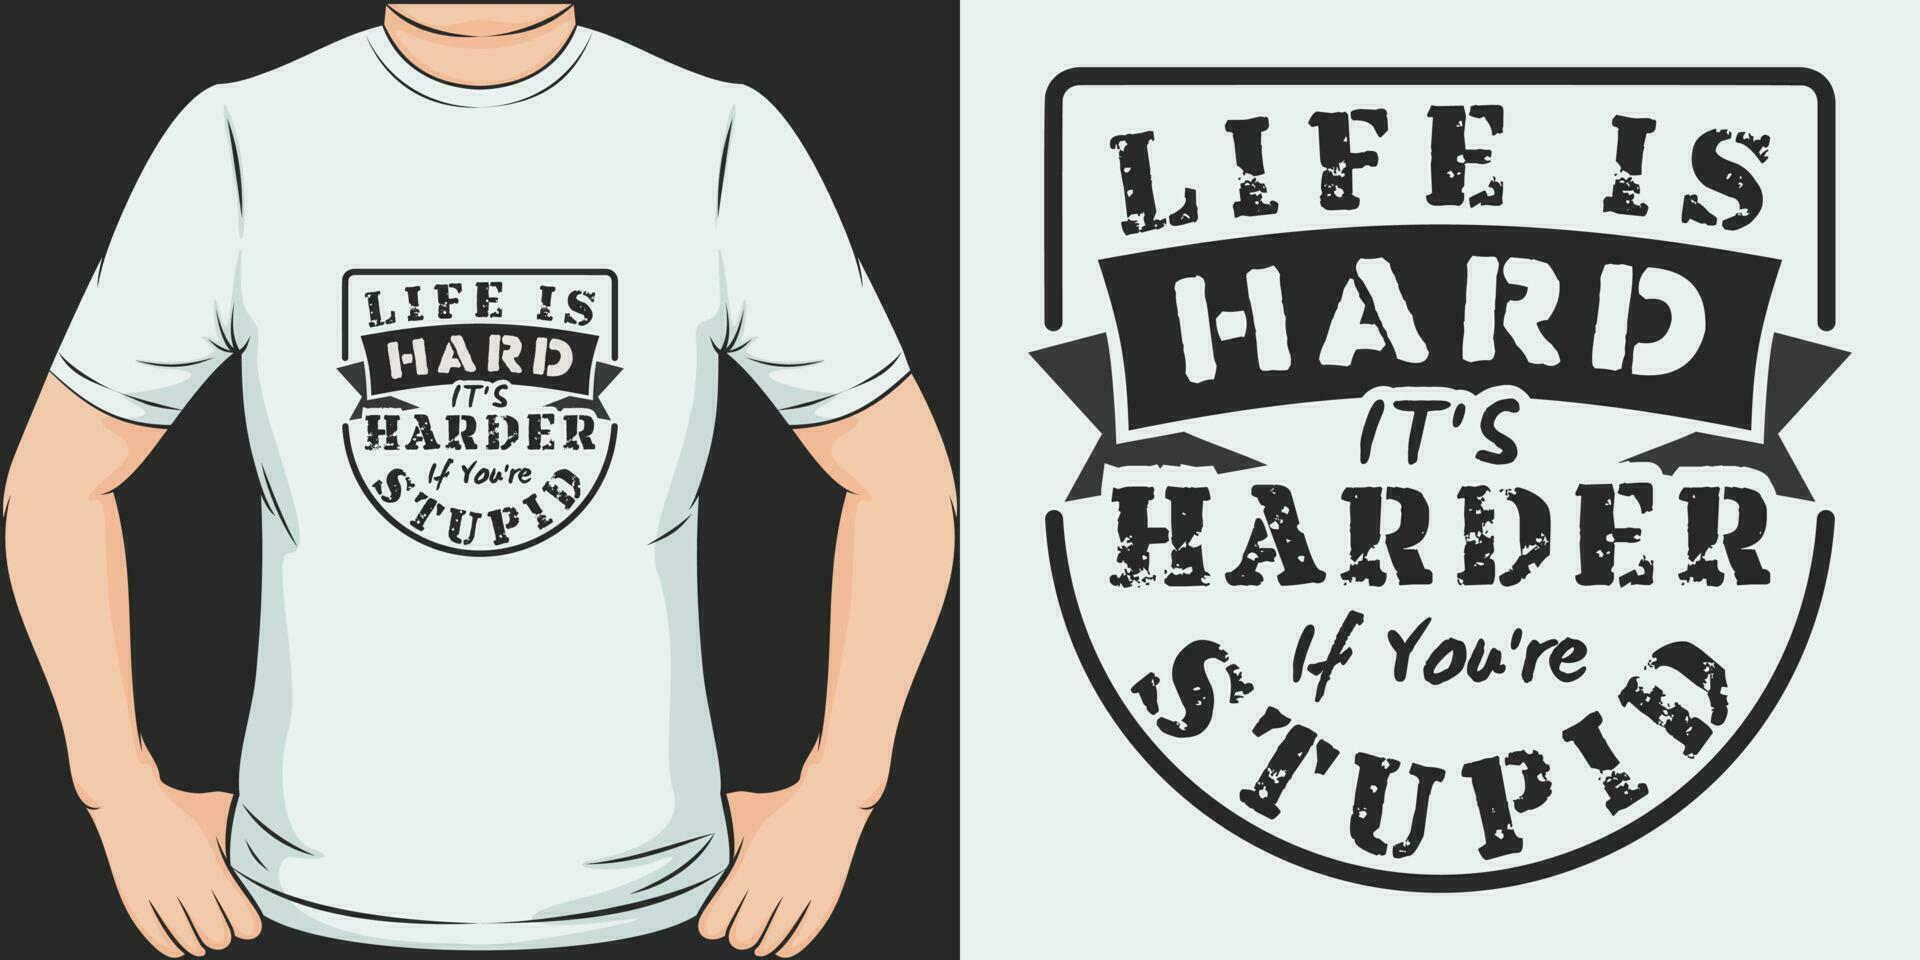 liv är hård, dess hårdare om du är korkad, rolig Citat t-shirt design. vektor